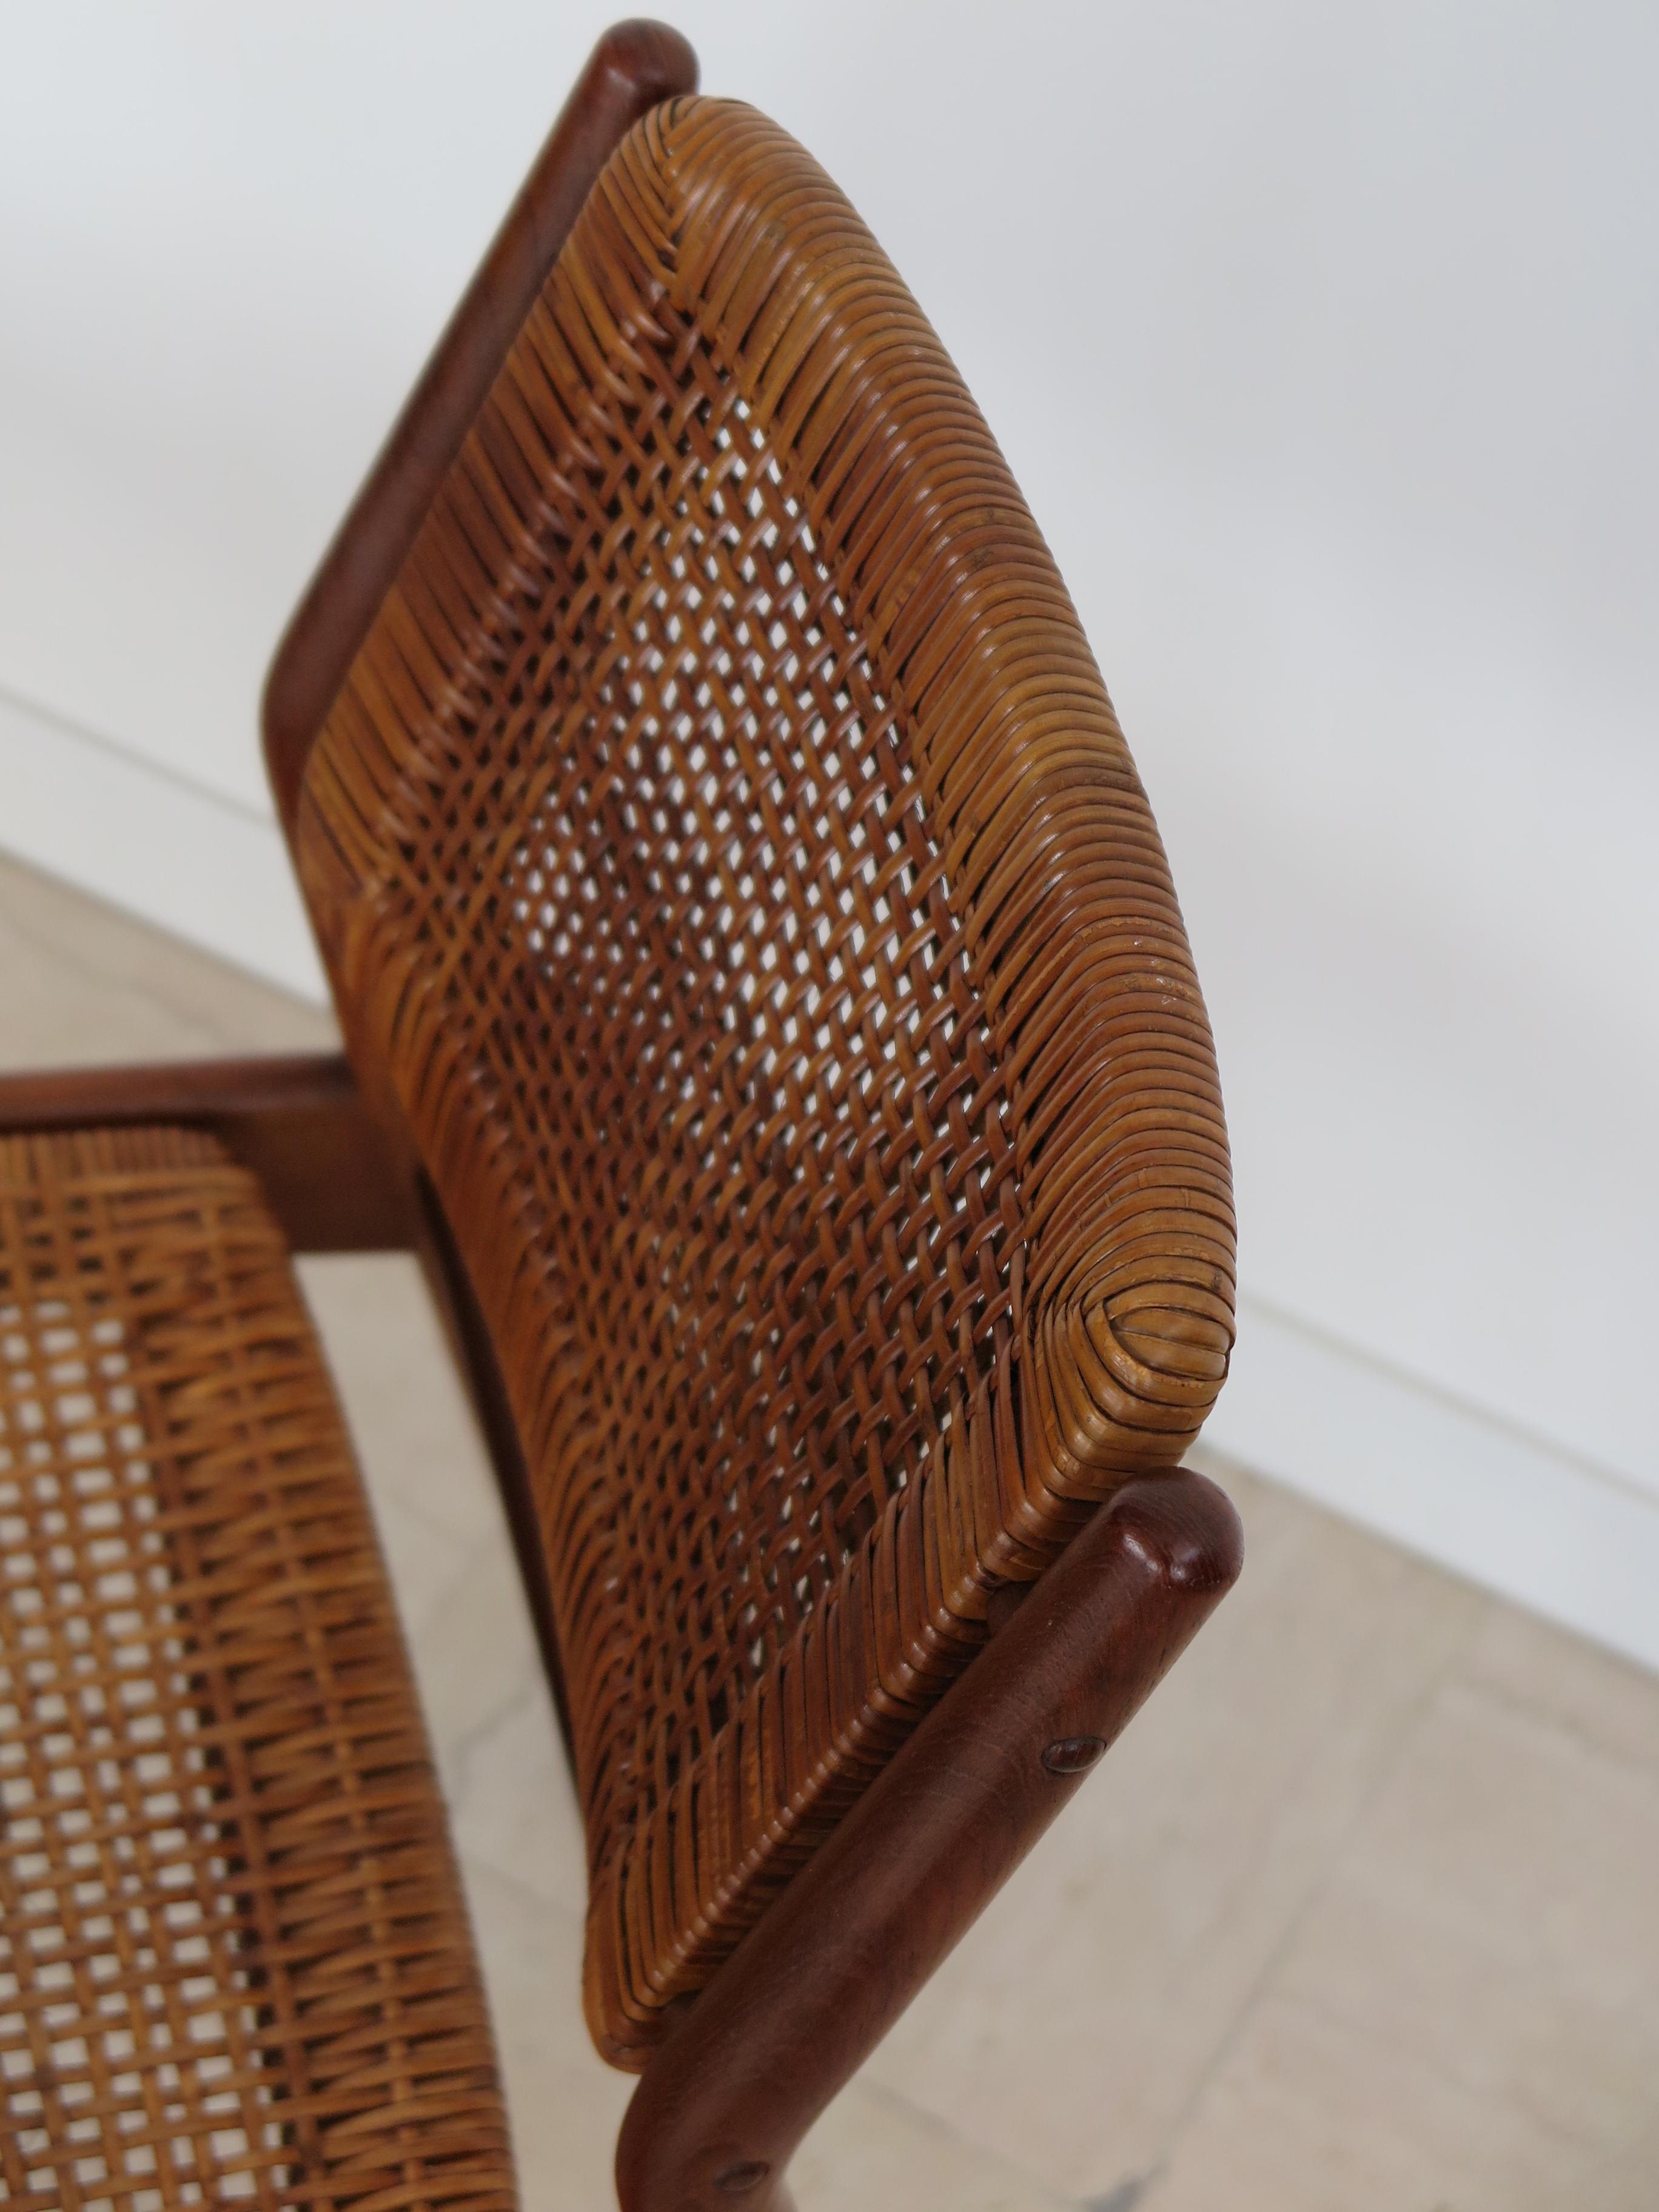 Arne Vodder Midcentury Scandinavian Teak Rattan Chairs for Sibast 1950s For Sale 6